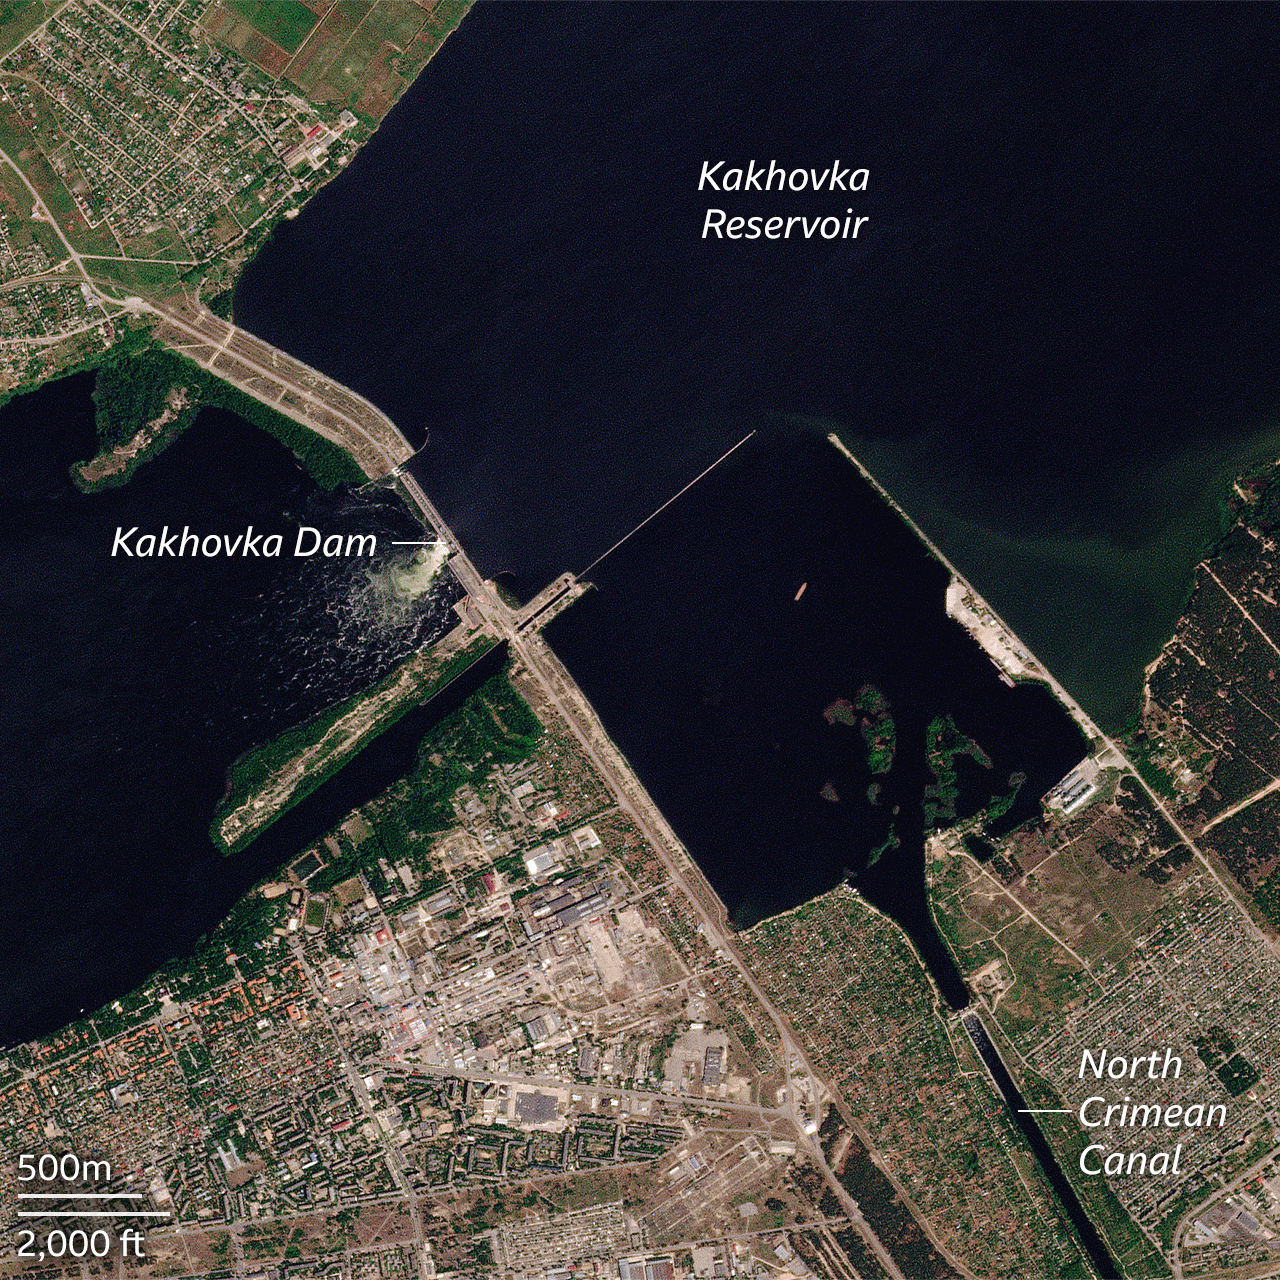 Последствия российского экоцида: спутниковые снимки показывают, что Каховское водохранилище полностью исчезло